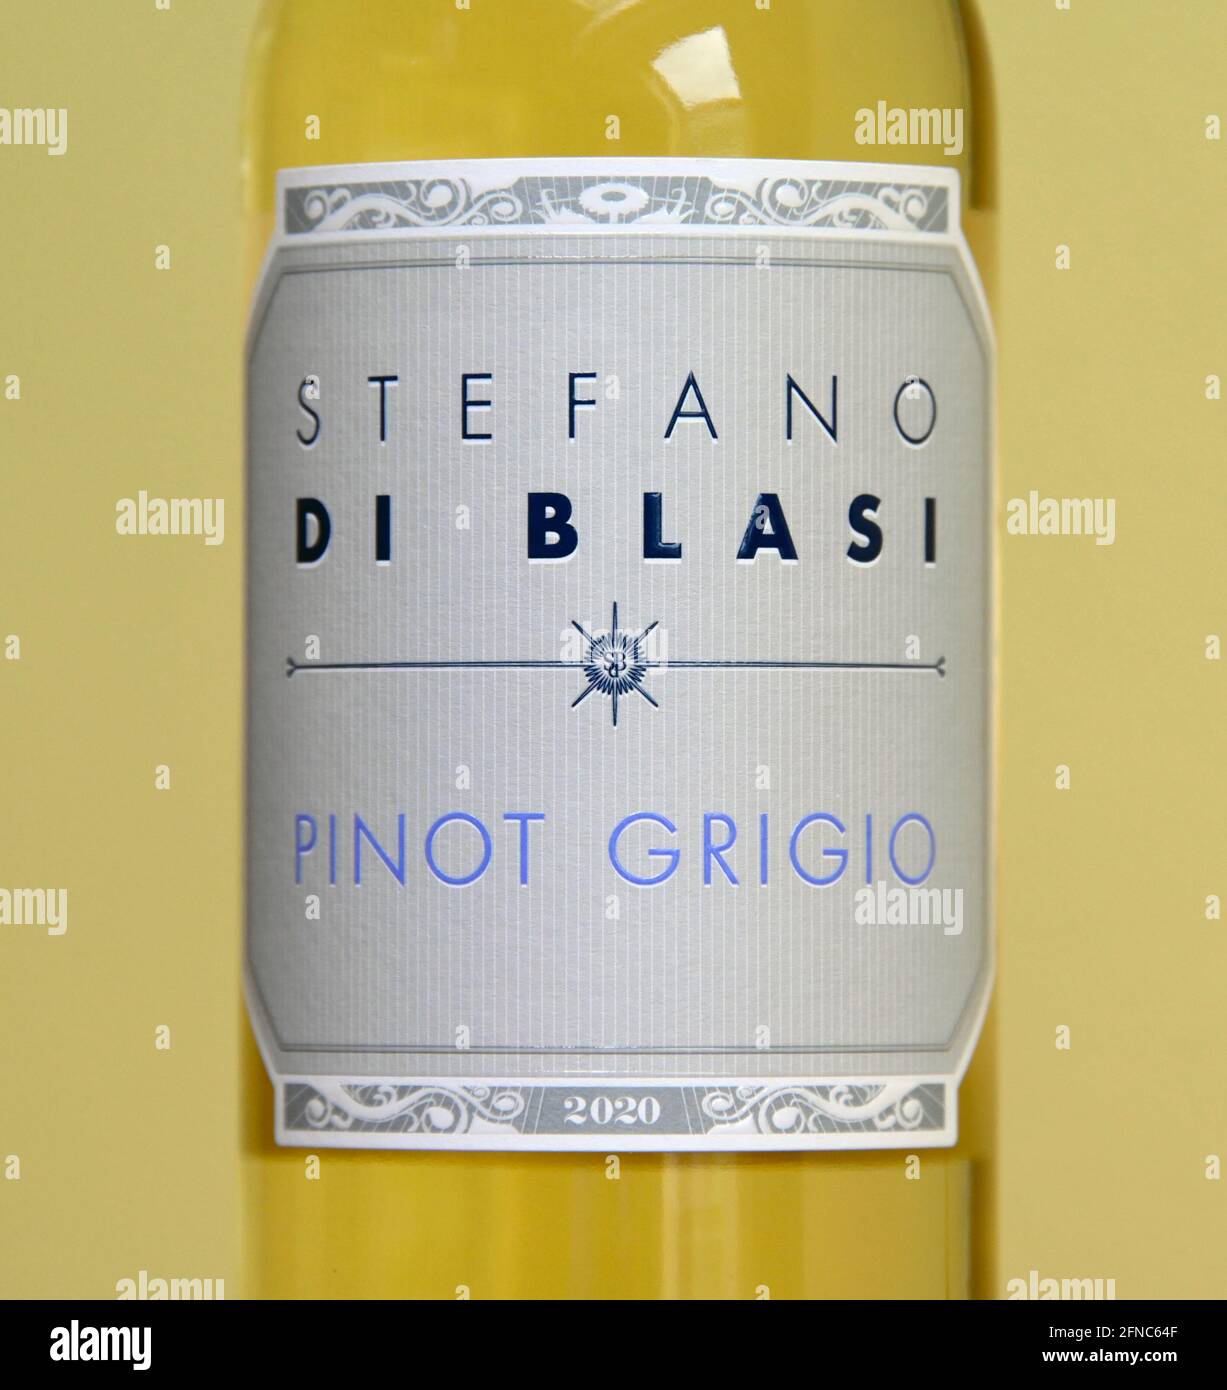 Weinetikett. Stefano di Blasi. Pinot Grigio 2020. Stockfoto